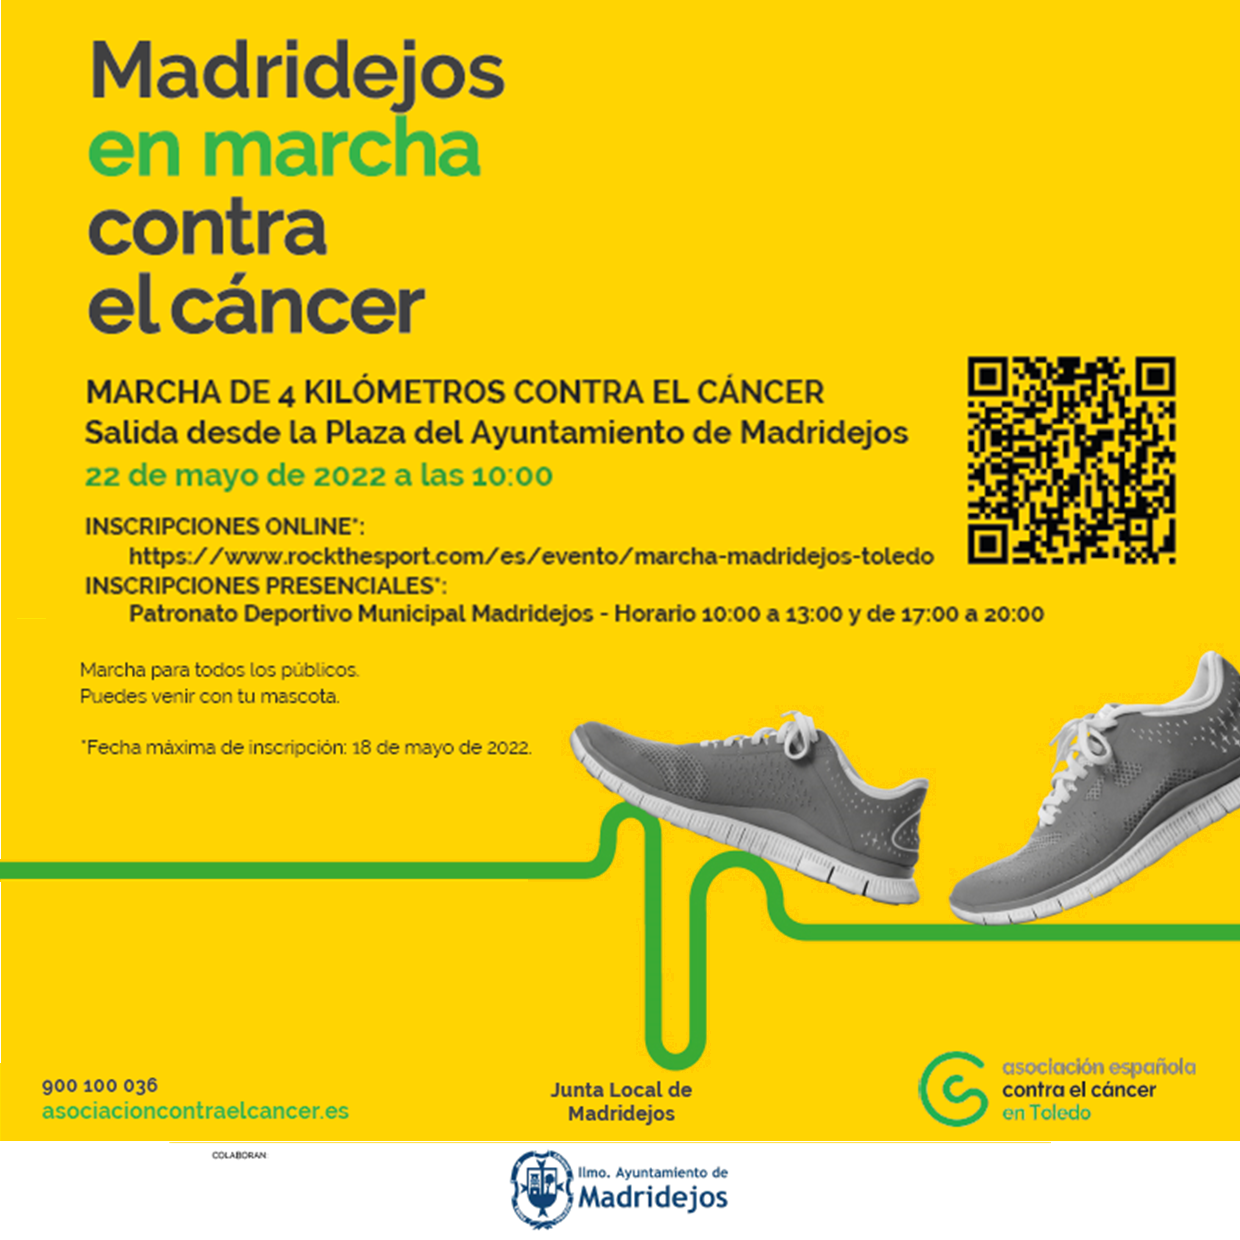 Madridejos en marcha contra el cáncer